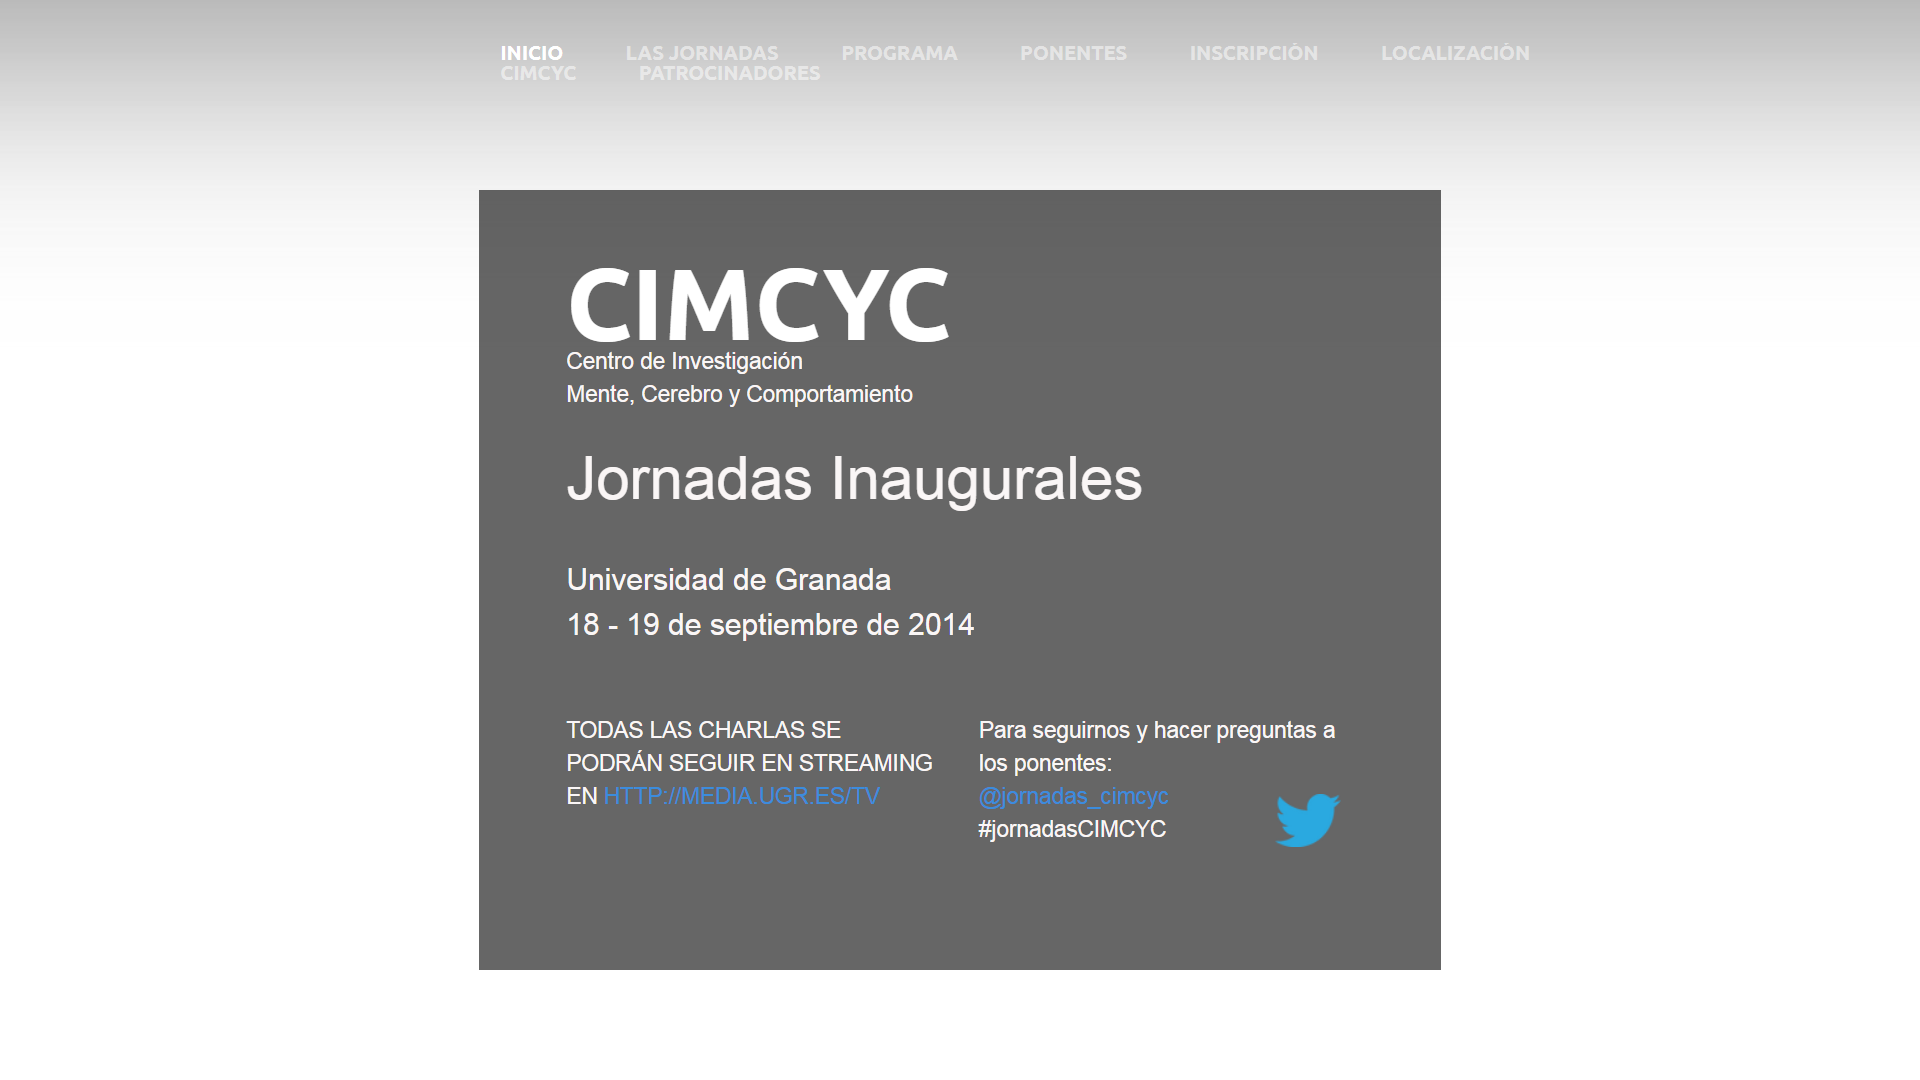 Opening days CIMCYC 2014